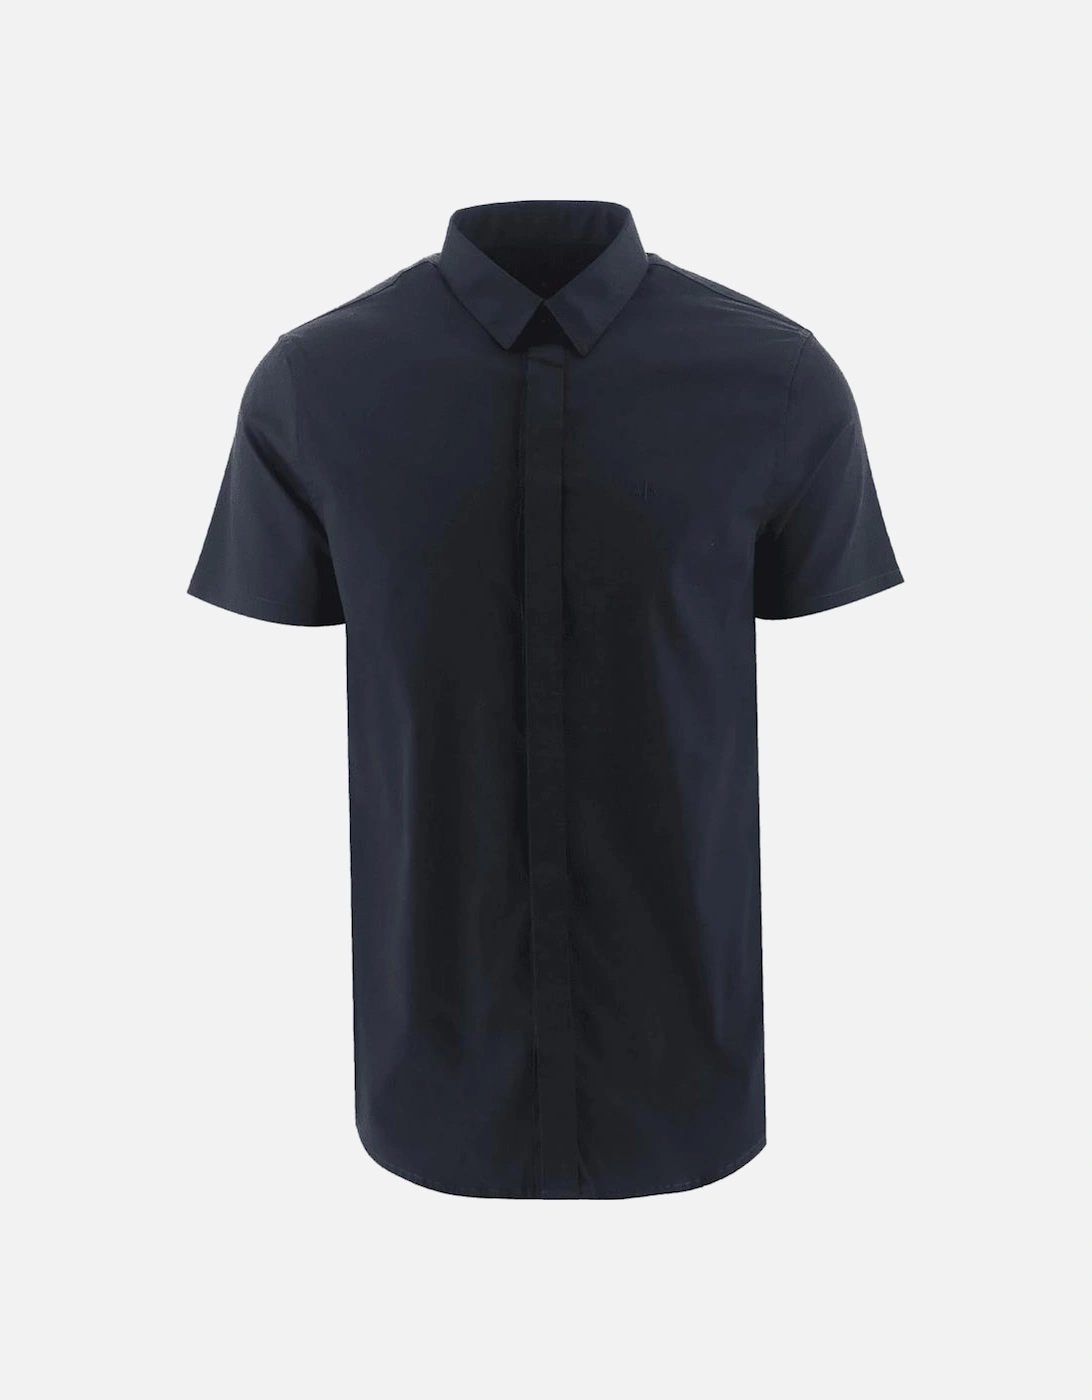 Woven Navy Button Up Short Sleeve Shirt, 4 of 3